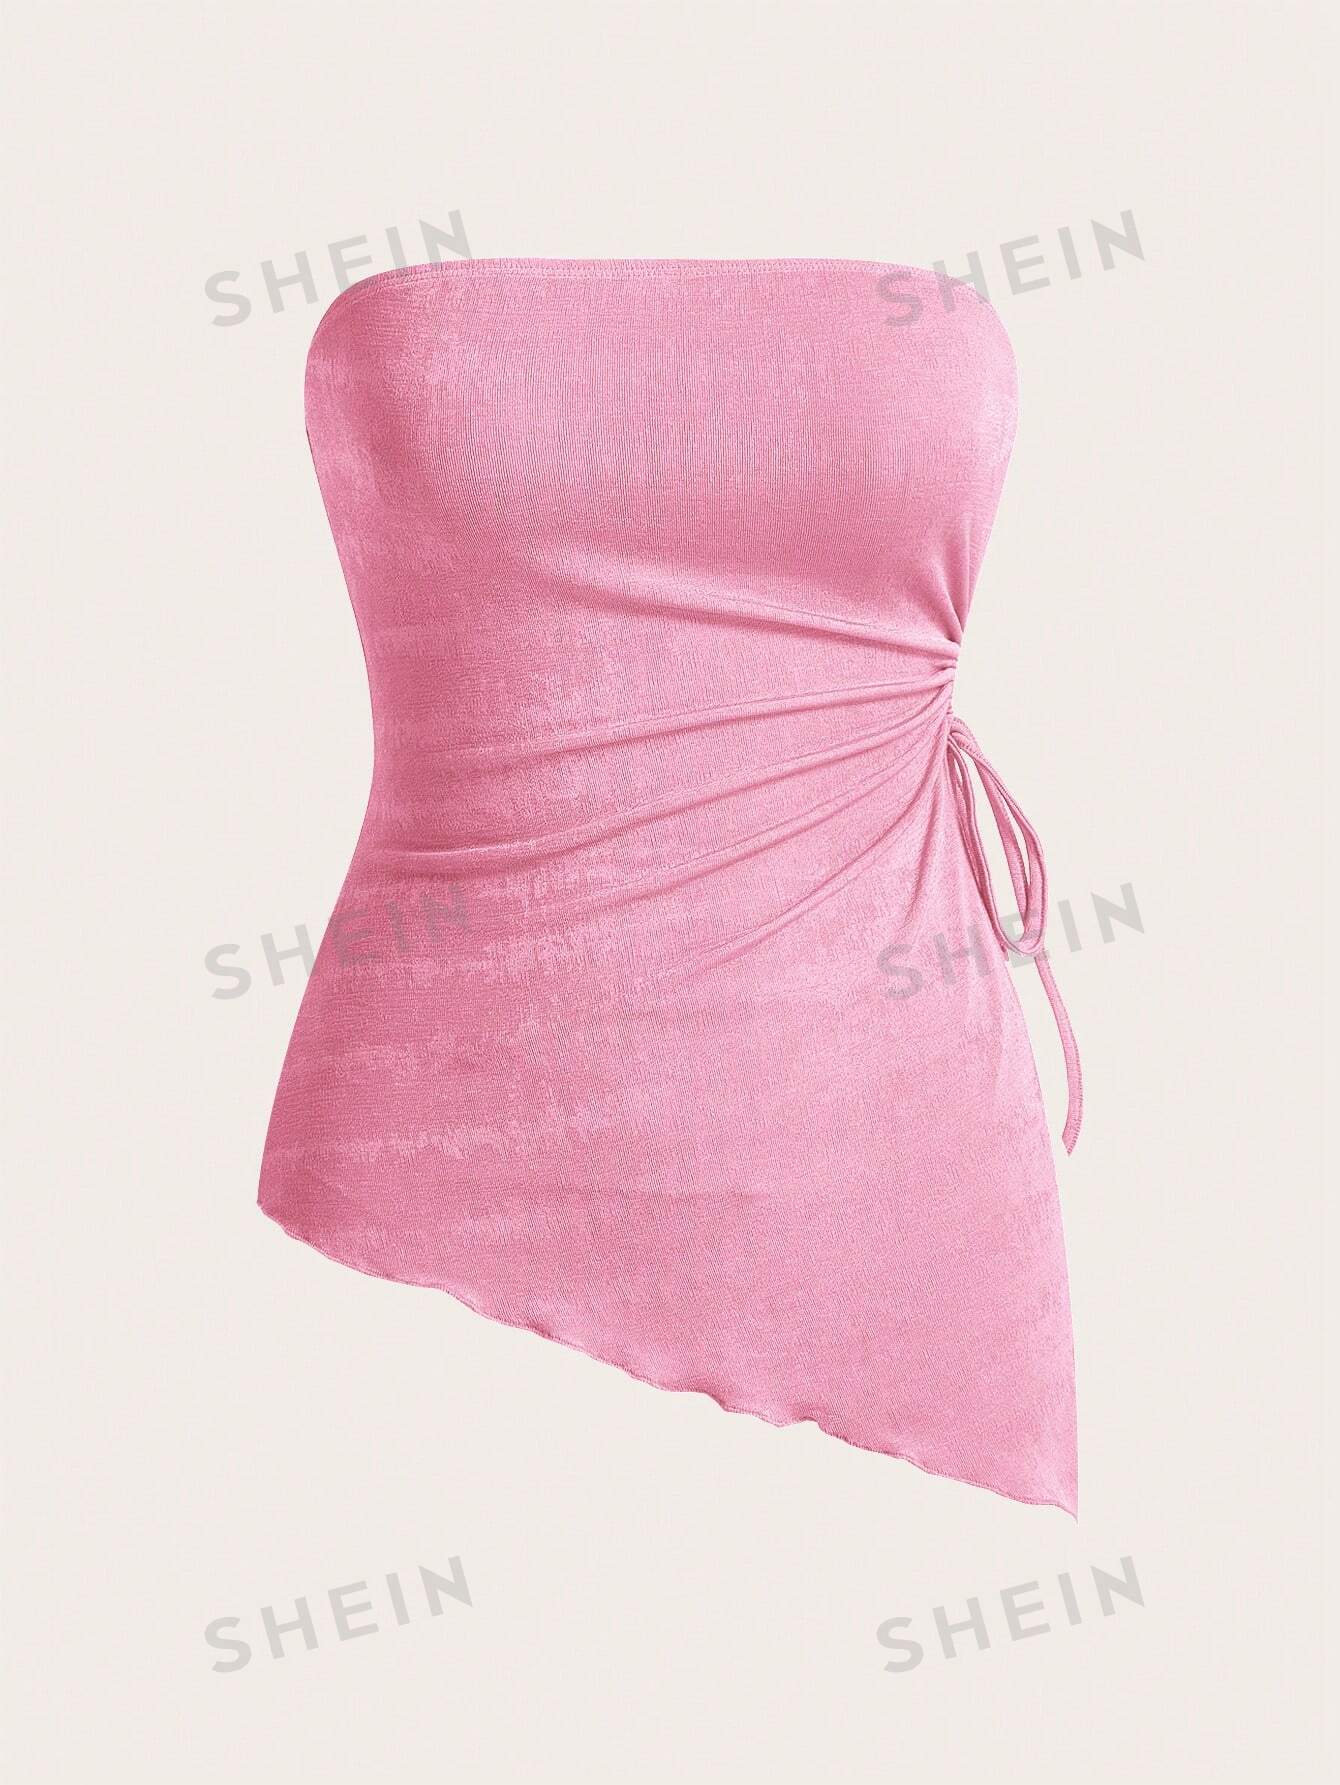 shein mod вязаный женский асимметричный топ бандо с завязками по бокам и неровным подолом розовый SHEIN MOD Вязаный женский асимметричный топ-бандо с завязками по бокам и неровным подолом, розовый